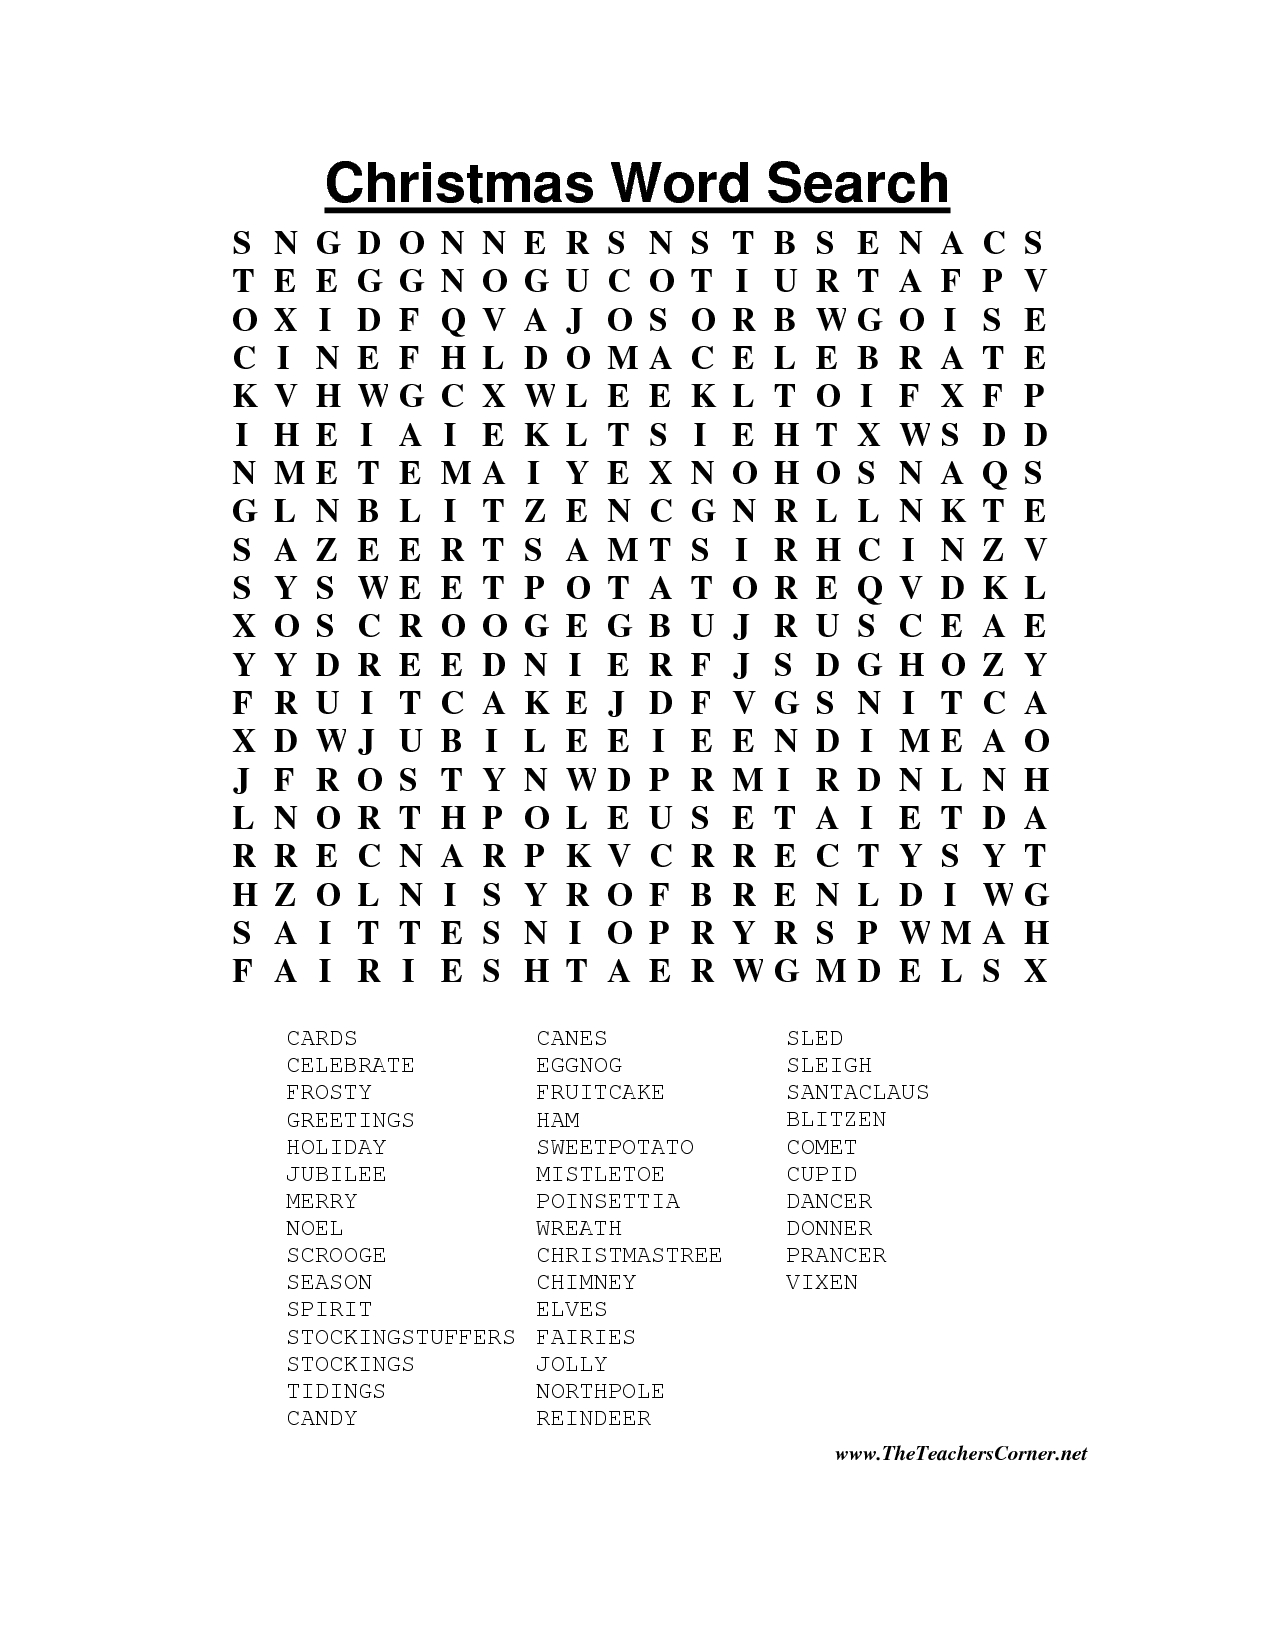 Hard Christmas Word Search Printable | Christmas Word Search - Printable Christmas Crossword Puzzles Pdf